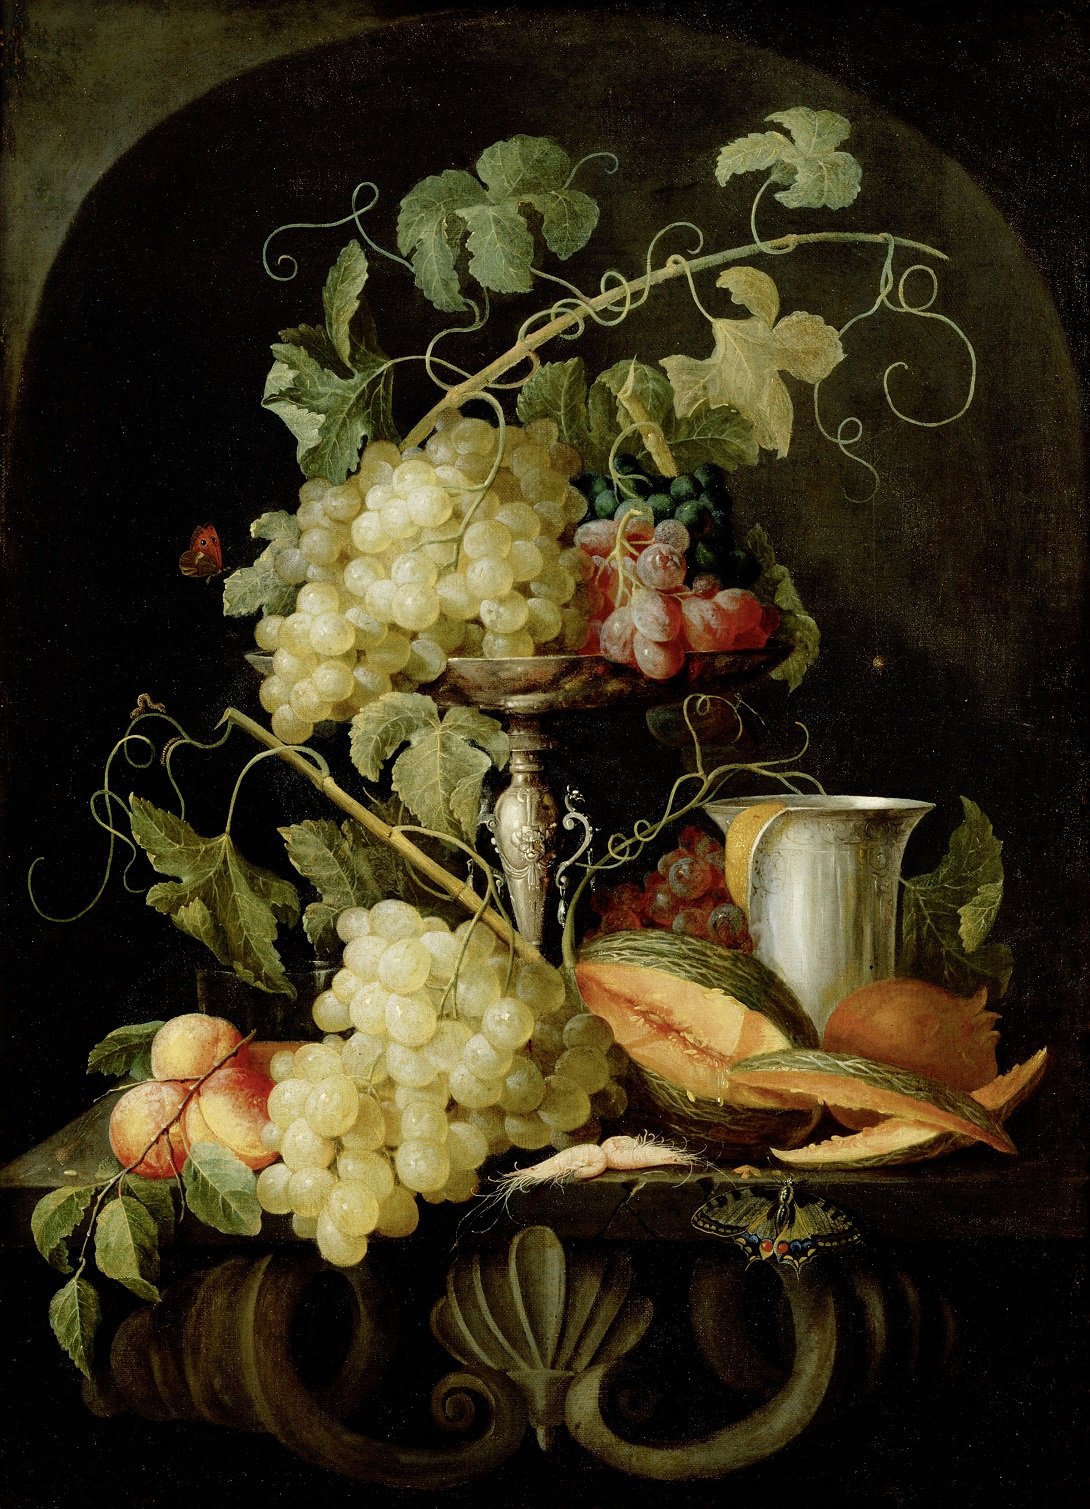 Pittura e scultura - Pagina 3 Attribuito-a-Jan-van-den-Hecke-Natura-morta-con-frutta-1650_1660-Olio-su-tela-81-cm-%C3%97-595-cm-Courtesy-KHM-Museumsverband